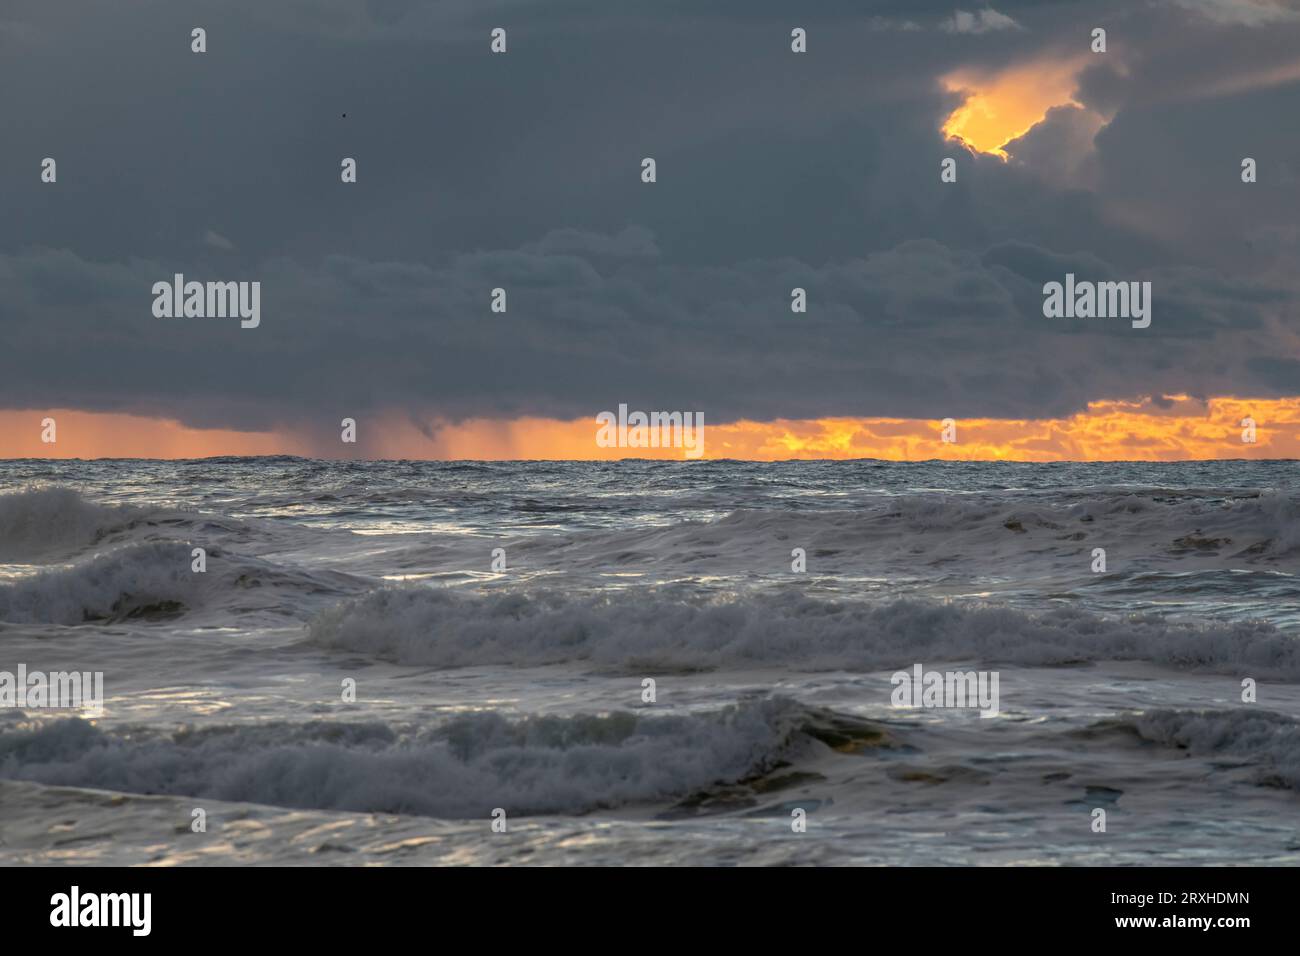 Coucher de soleil révélant un squall lointain au large de la côte Pacifique près de Ilwaco, Washington, Washington, USA ; Ilwaco, Washington, États-Unis d'Amérique Banque D'Images